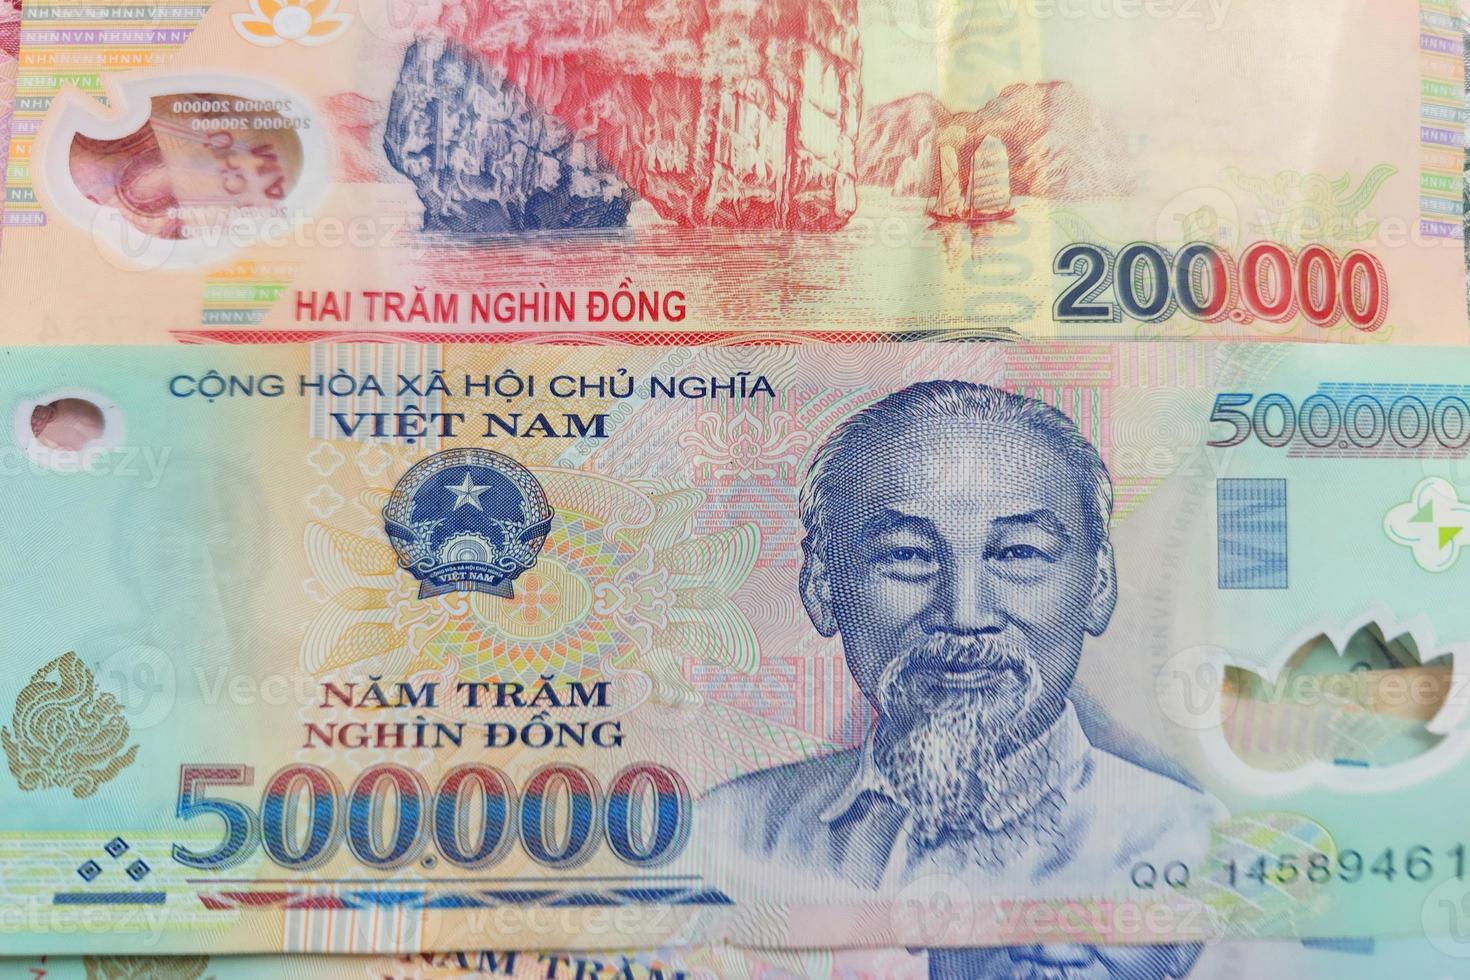 Vietnamese dong bankbiljetten close-up. geld achtergrond. Vietnamese valuta - dongs. patroontextuur en achtergrond van vietnam dong-geld, valutabankbiljetten klaar voor uitwisseling en zakelijke investeringen foto